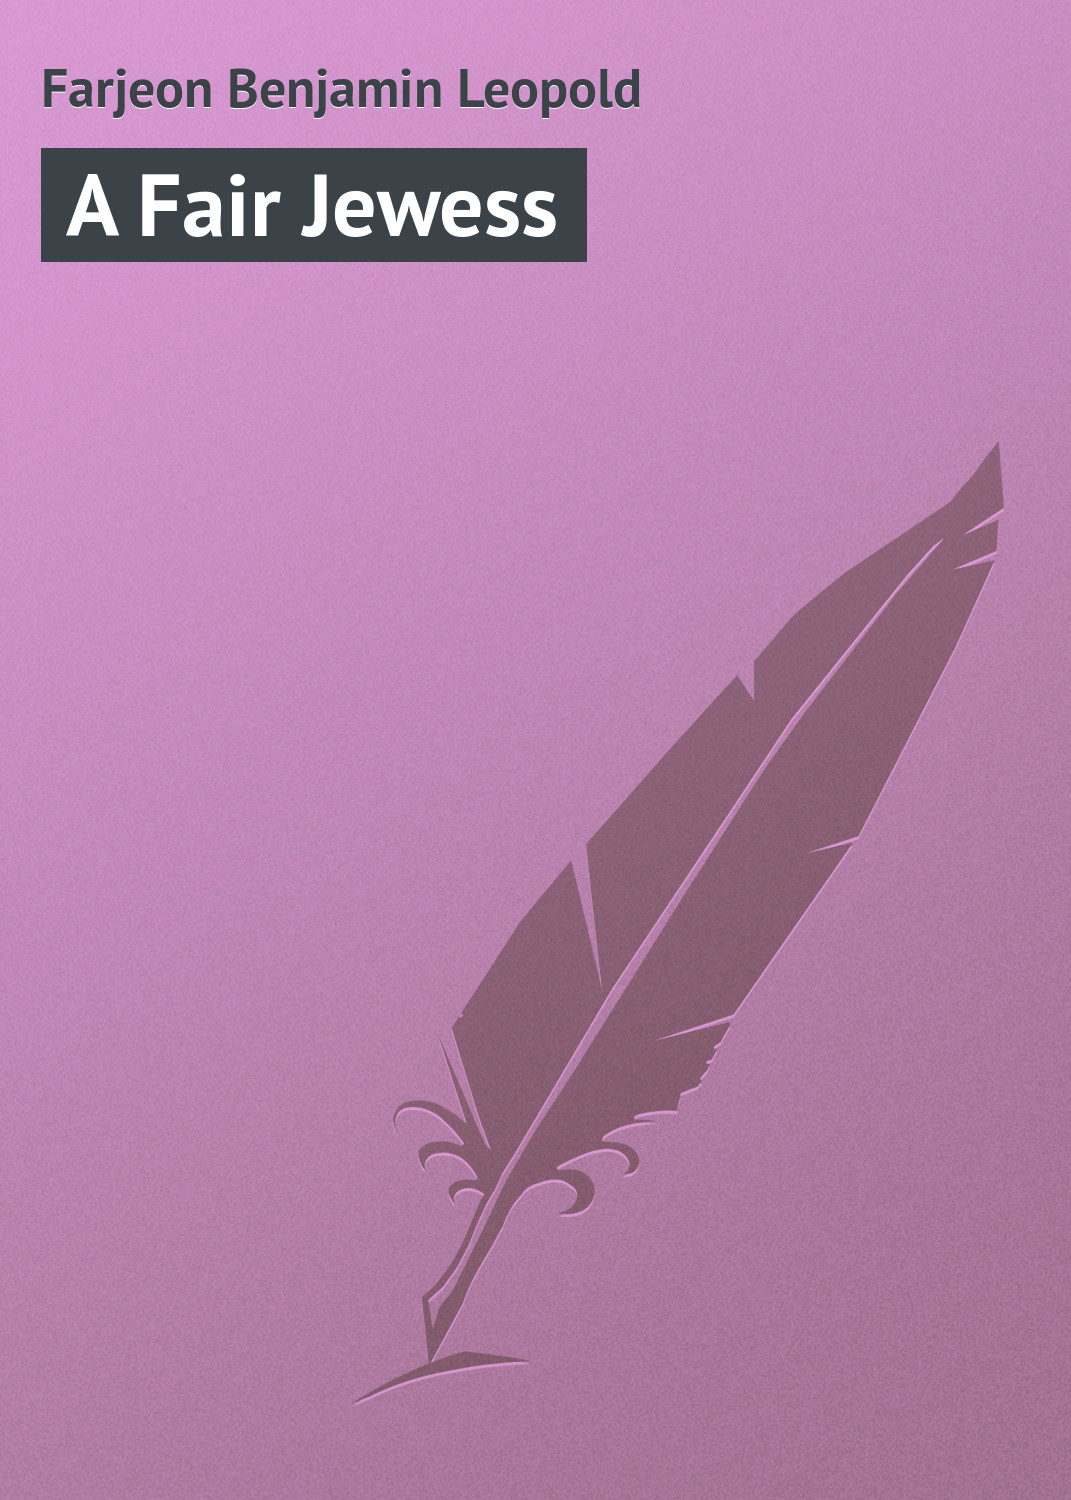 Книга A Fair Jewess из серии , созданная Benjamin Farjeon, может относится к жанру Зарубежная классика, Иностранные языки. Стоимость электронной книги A Fair Jewess с идентификатором 23164211 составляет 5.99 руб.